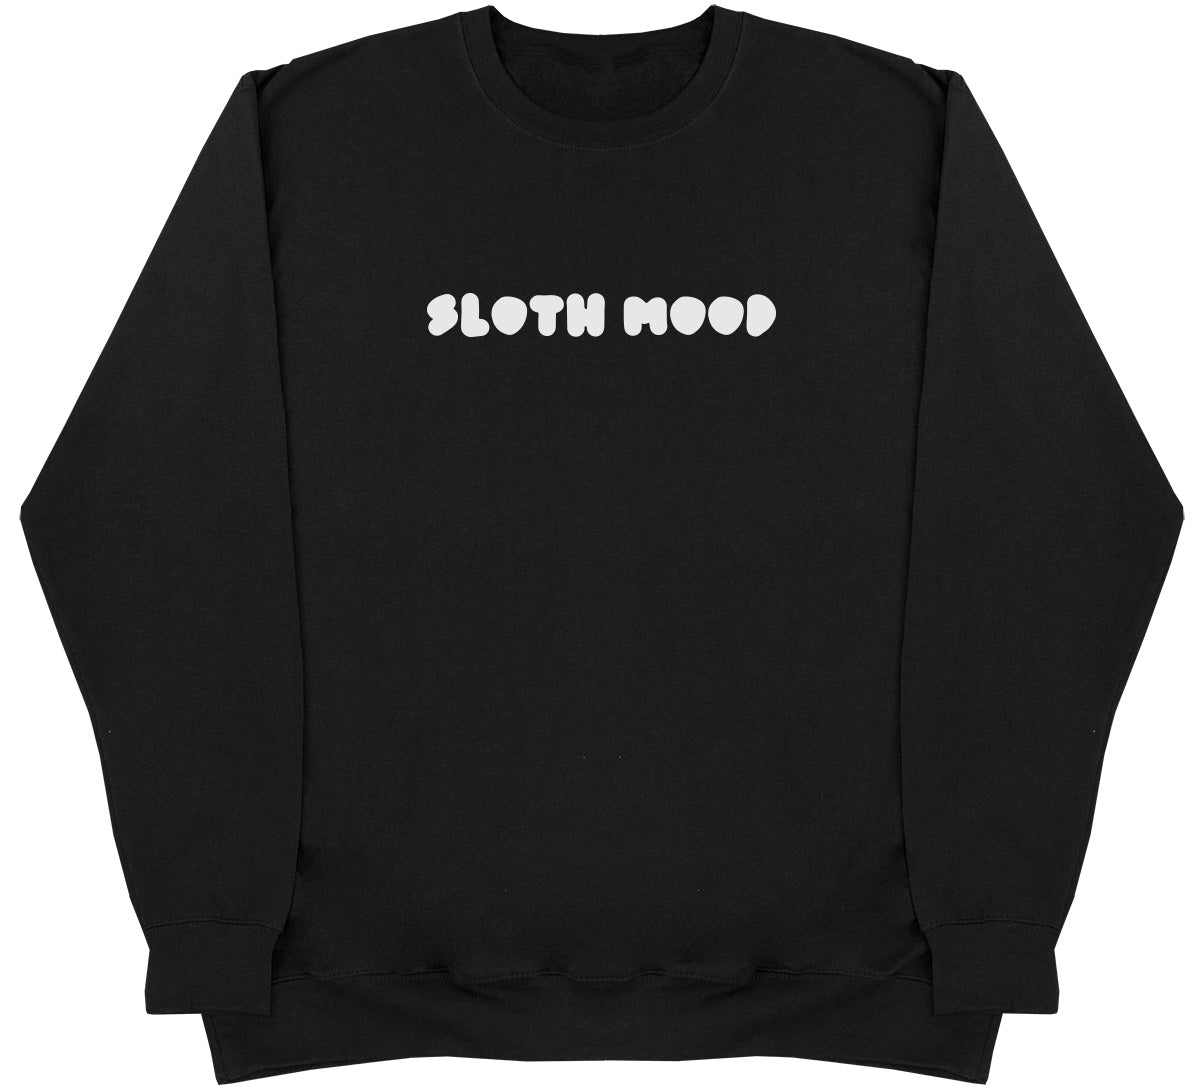 Sloth Mood - Huge Oversized Comfy Original Sweater